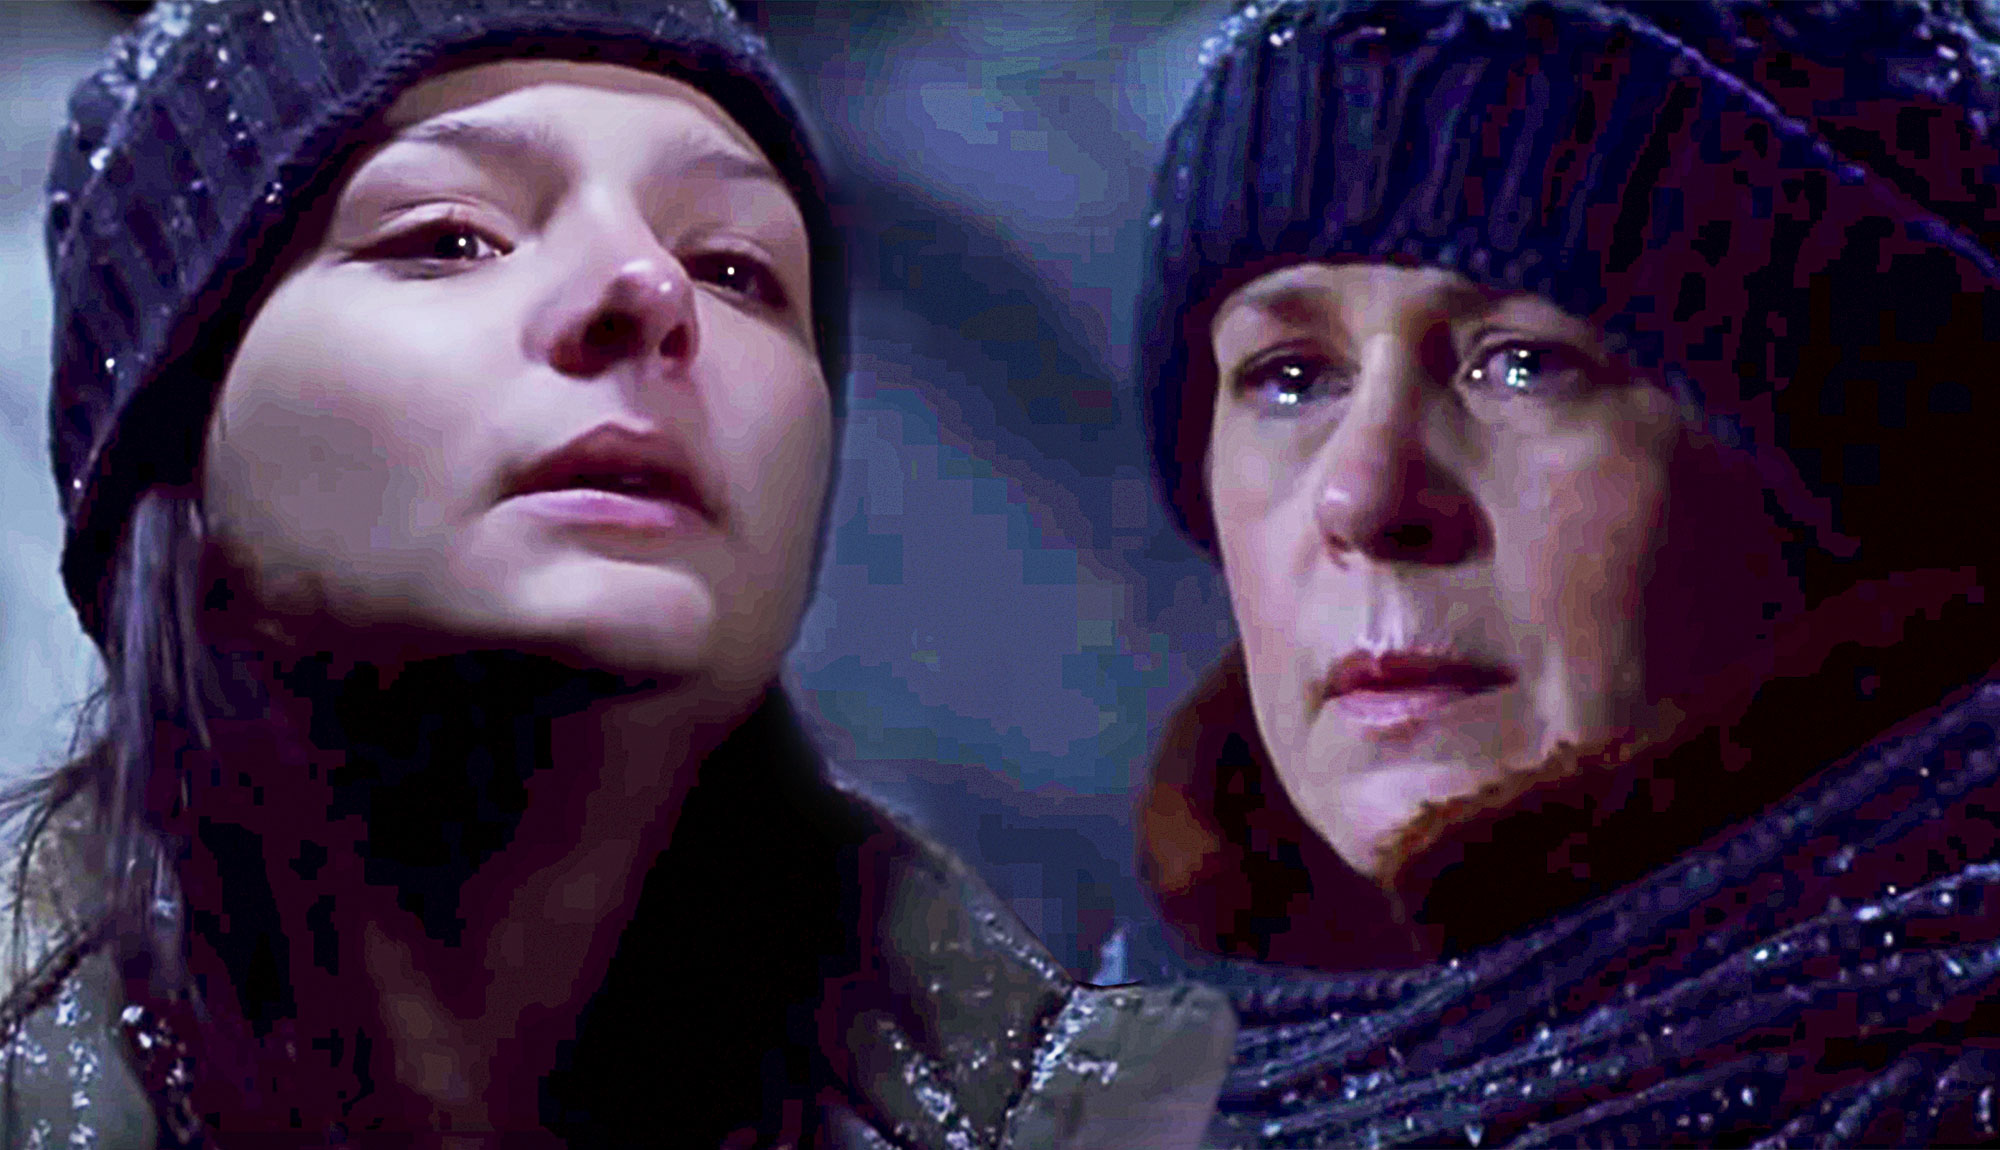 Carol Saves Lydia In Emotional Scene From The Walking Dead Season 9 Finale